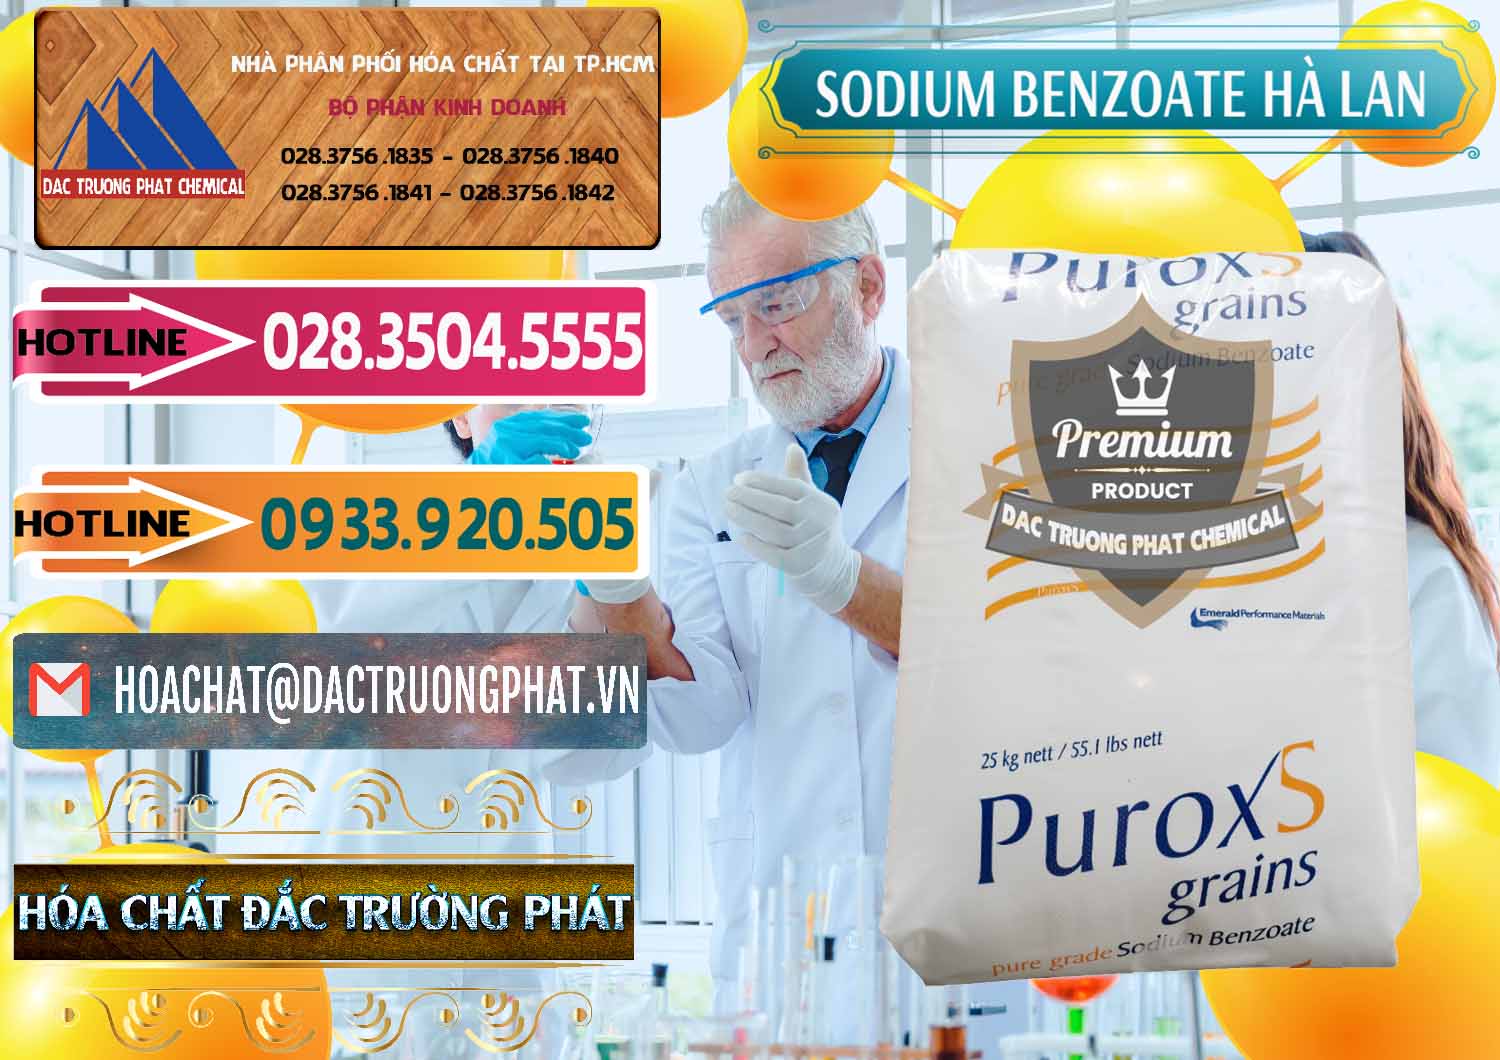 Nơi chuyên cung cấp ( bán ) Sodium Benzoate - Mốc Bột Puroxs Hà Lan Netherlands - 0467 - Nhà cung cấp và bán hóa chất tại TP.HCM - dactruongphat.vn